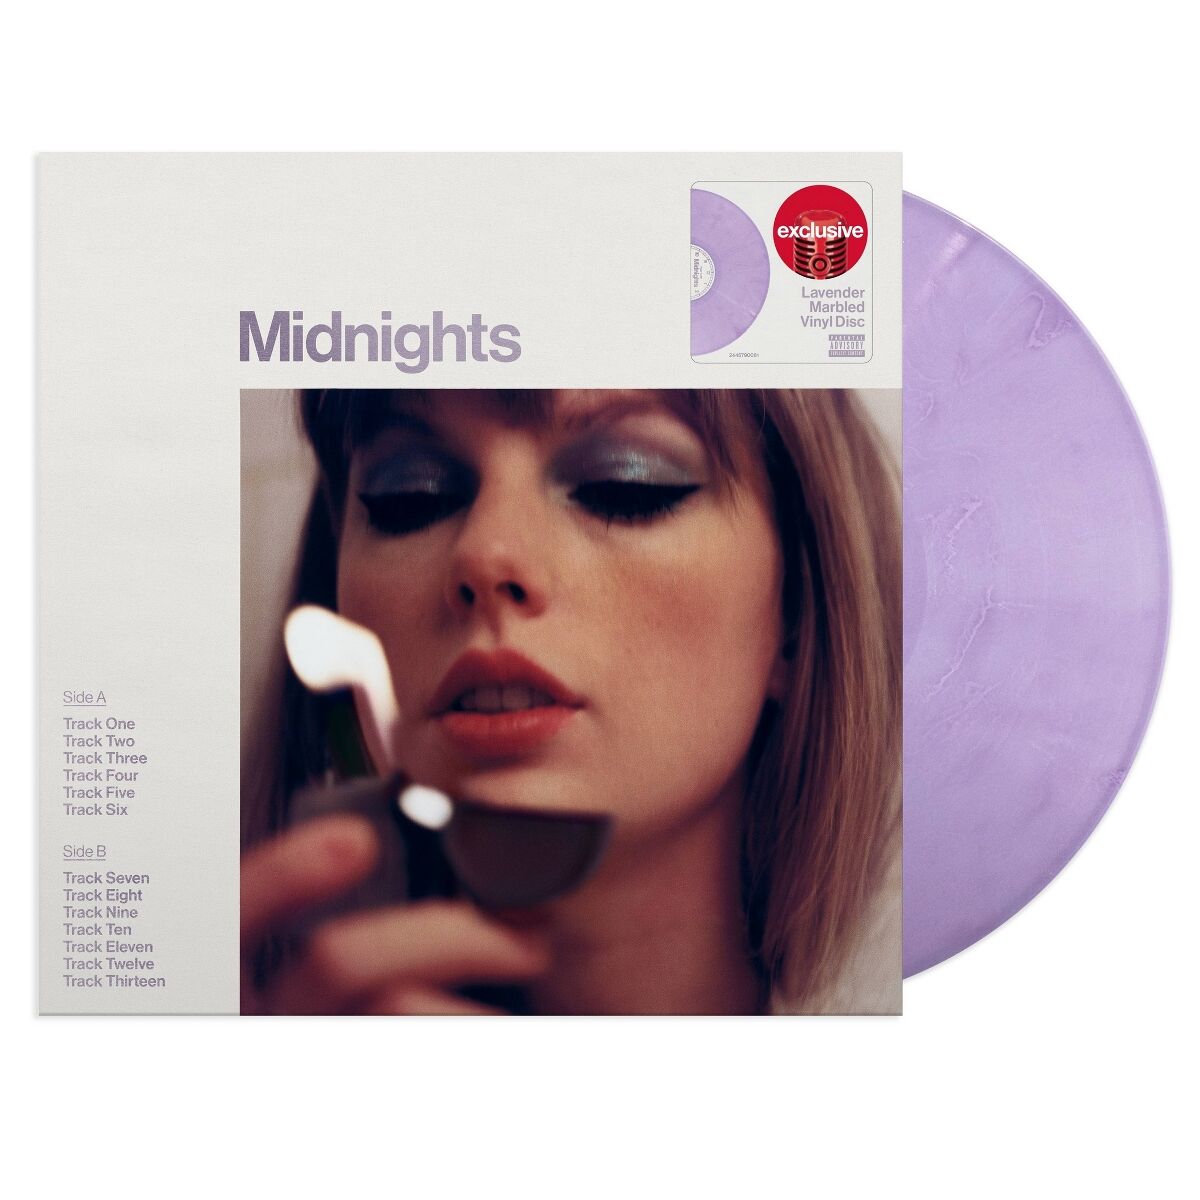 TAYLOR SWIFT Midnights Target Lavender Vinyl